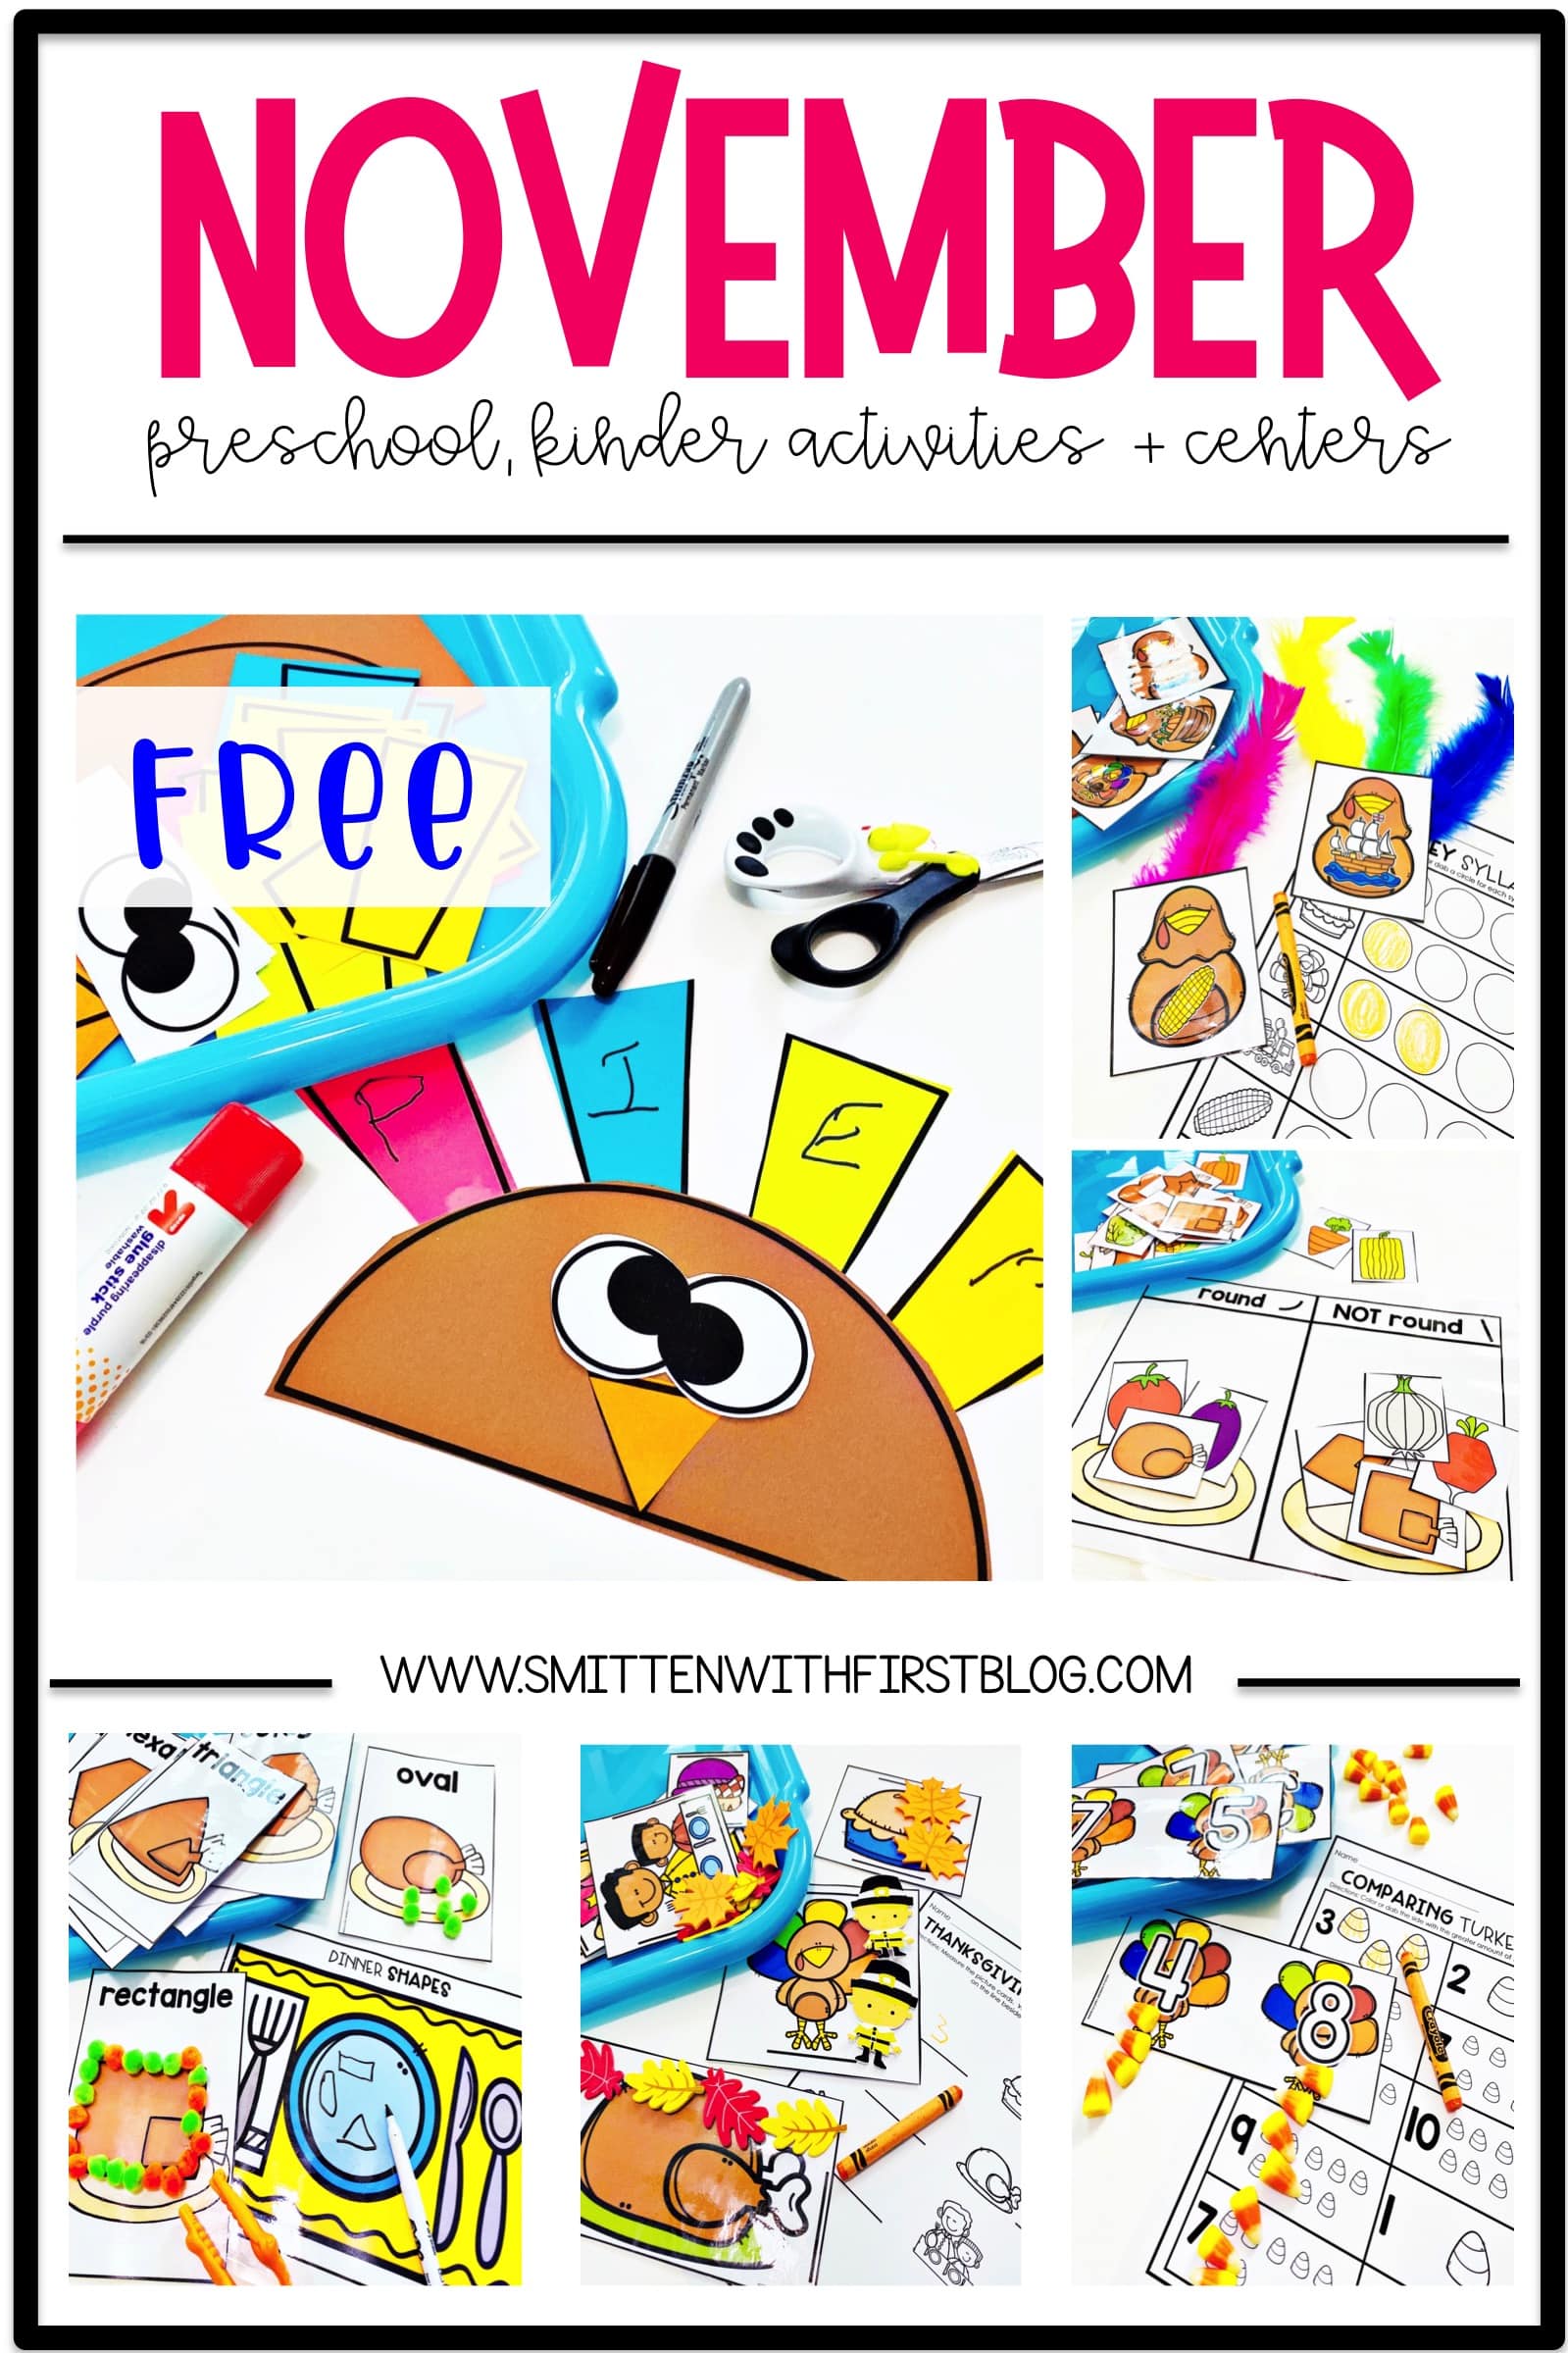 November activities for prek, preschool, and kindergarten